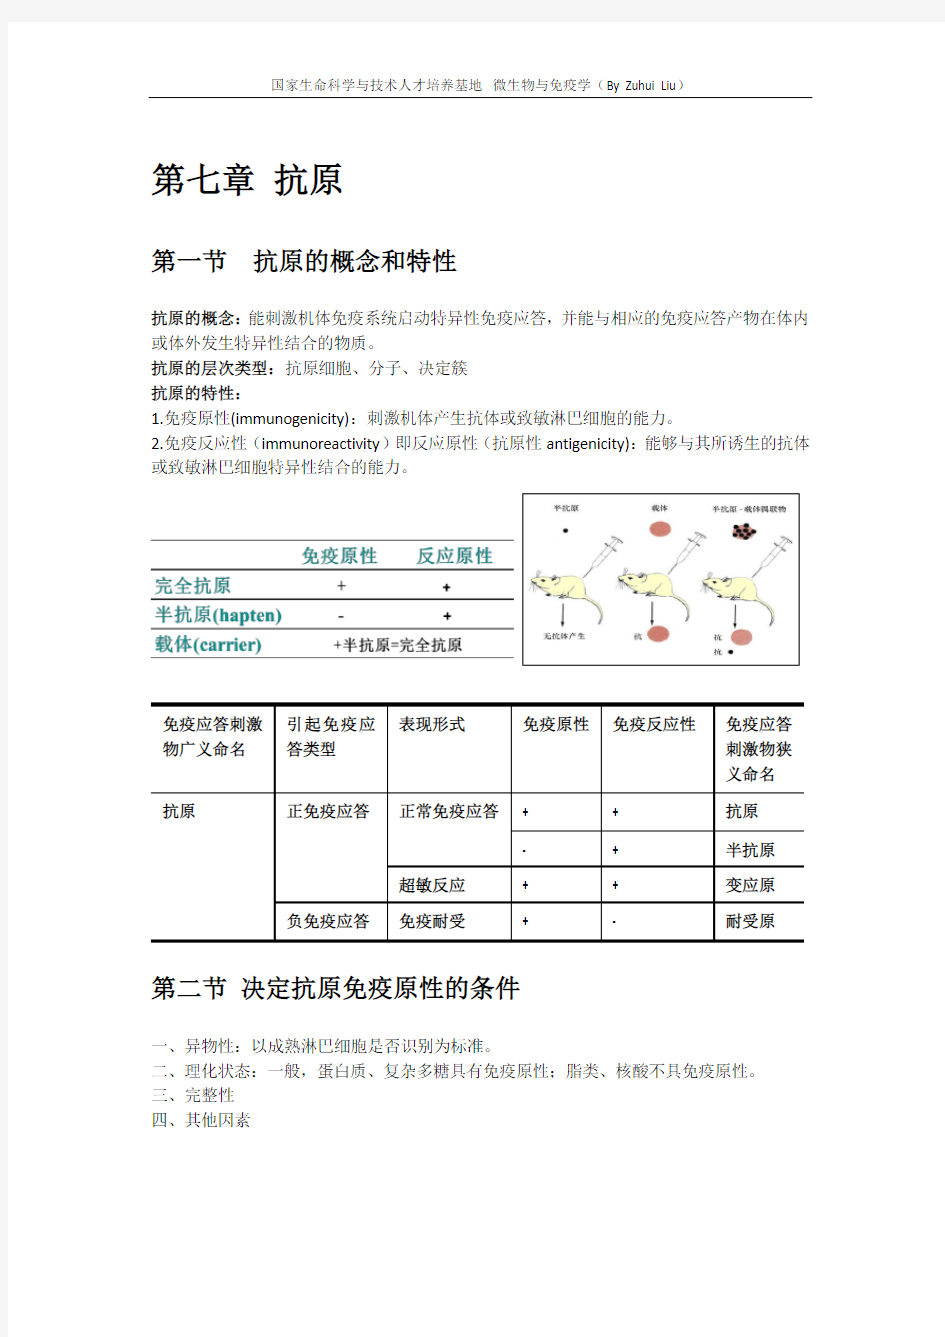 微生物与免疫学(免疫学部分)-中国药科大学